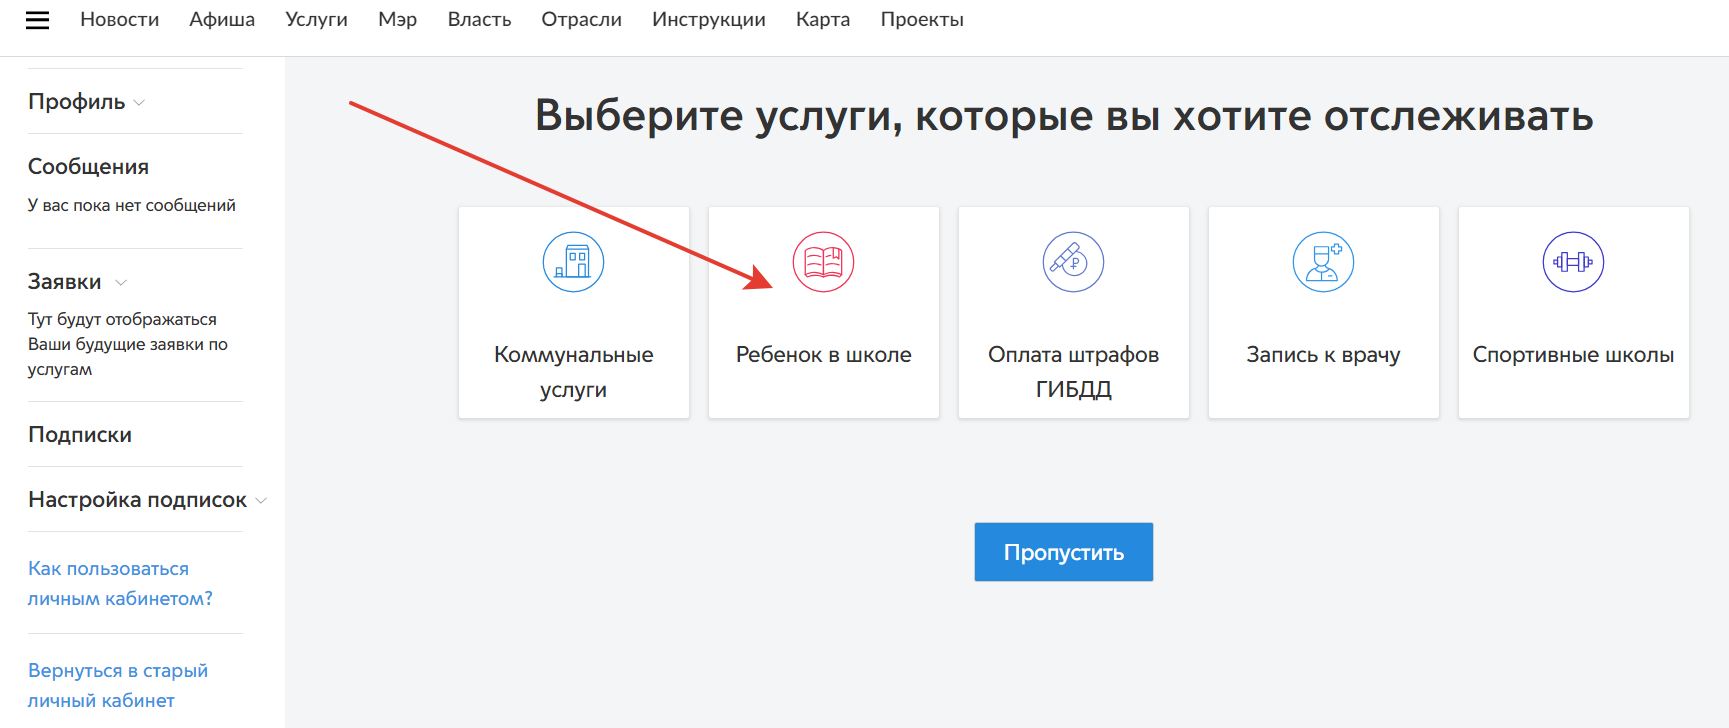 Мосуслуги pgu mos ru личный кабинет: как войти и зарегистрироваться. как пользоваться личным кабинетом на mos.ru